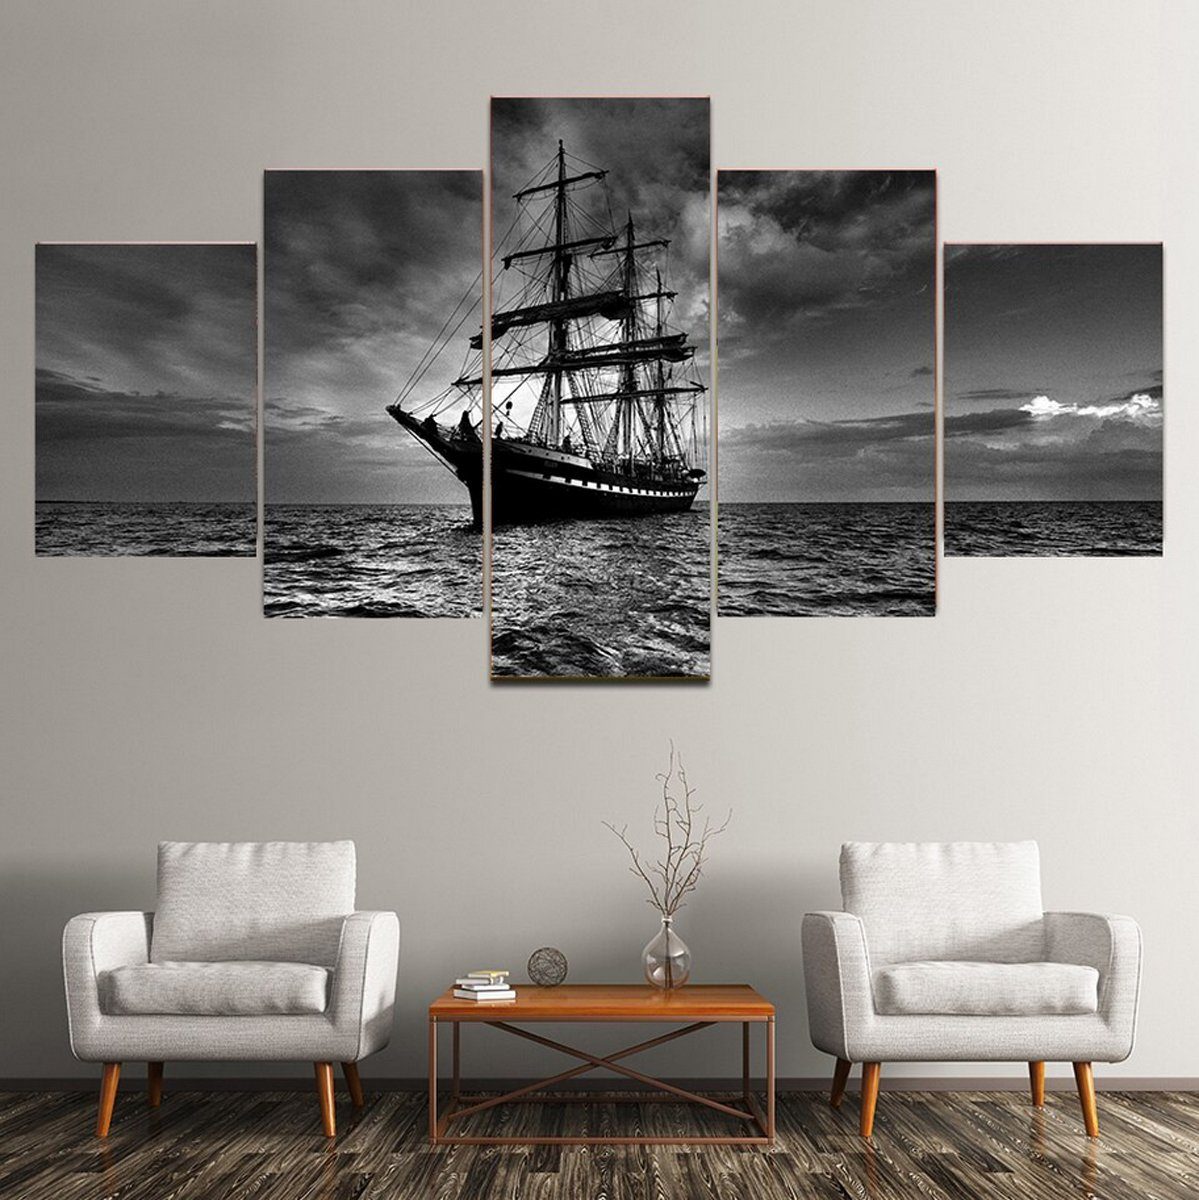 TPFLiving Kunstdruck (OHNE RAHMEN) Poster - Leinwand - Wandbild, 5 teiliges  Wandbild - Segelschiff auf hoher See (Leinwandbild XXL), Farben: Schwarz,  Weiß - Größe: 10X15 10X20 10X25cm